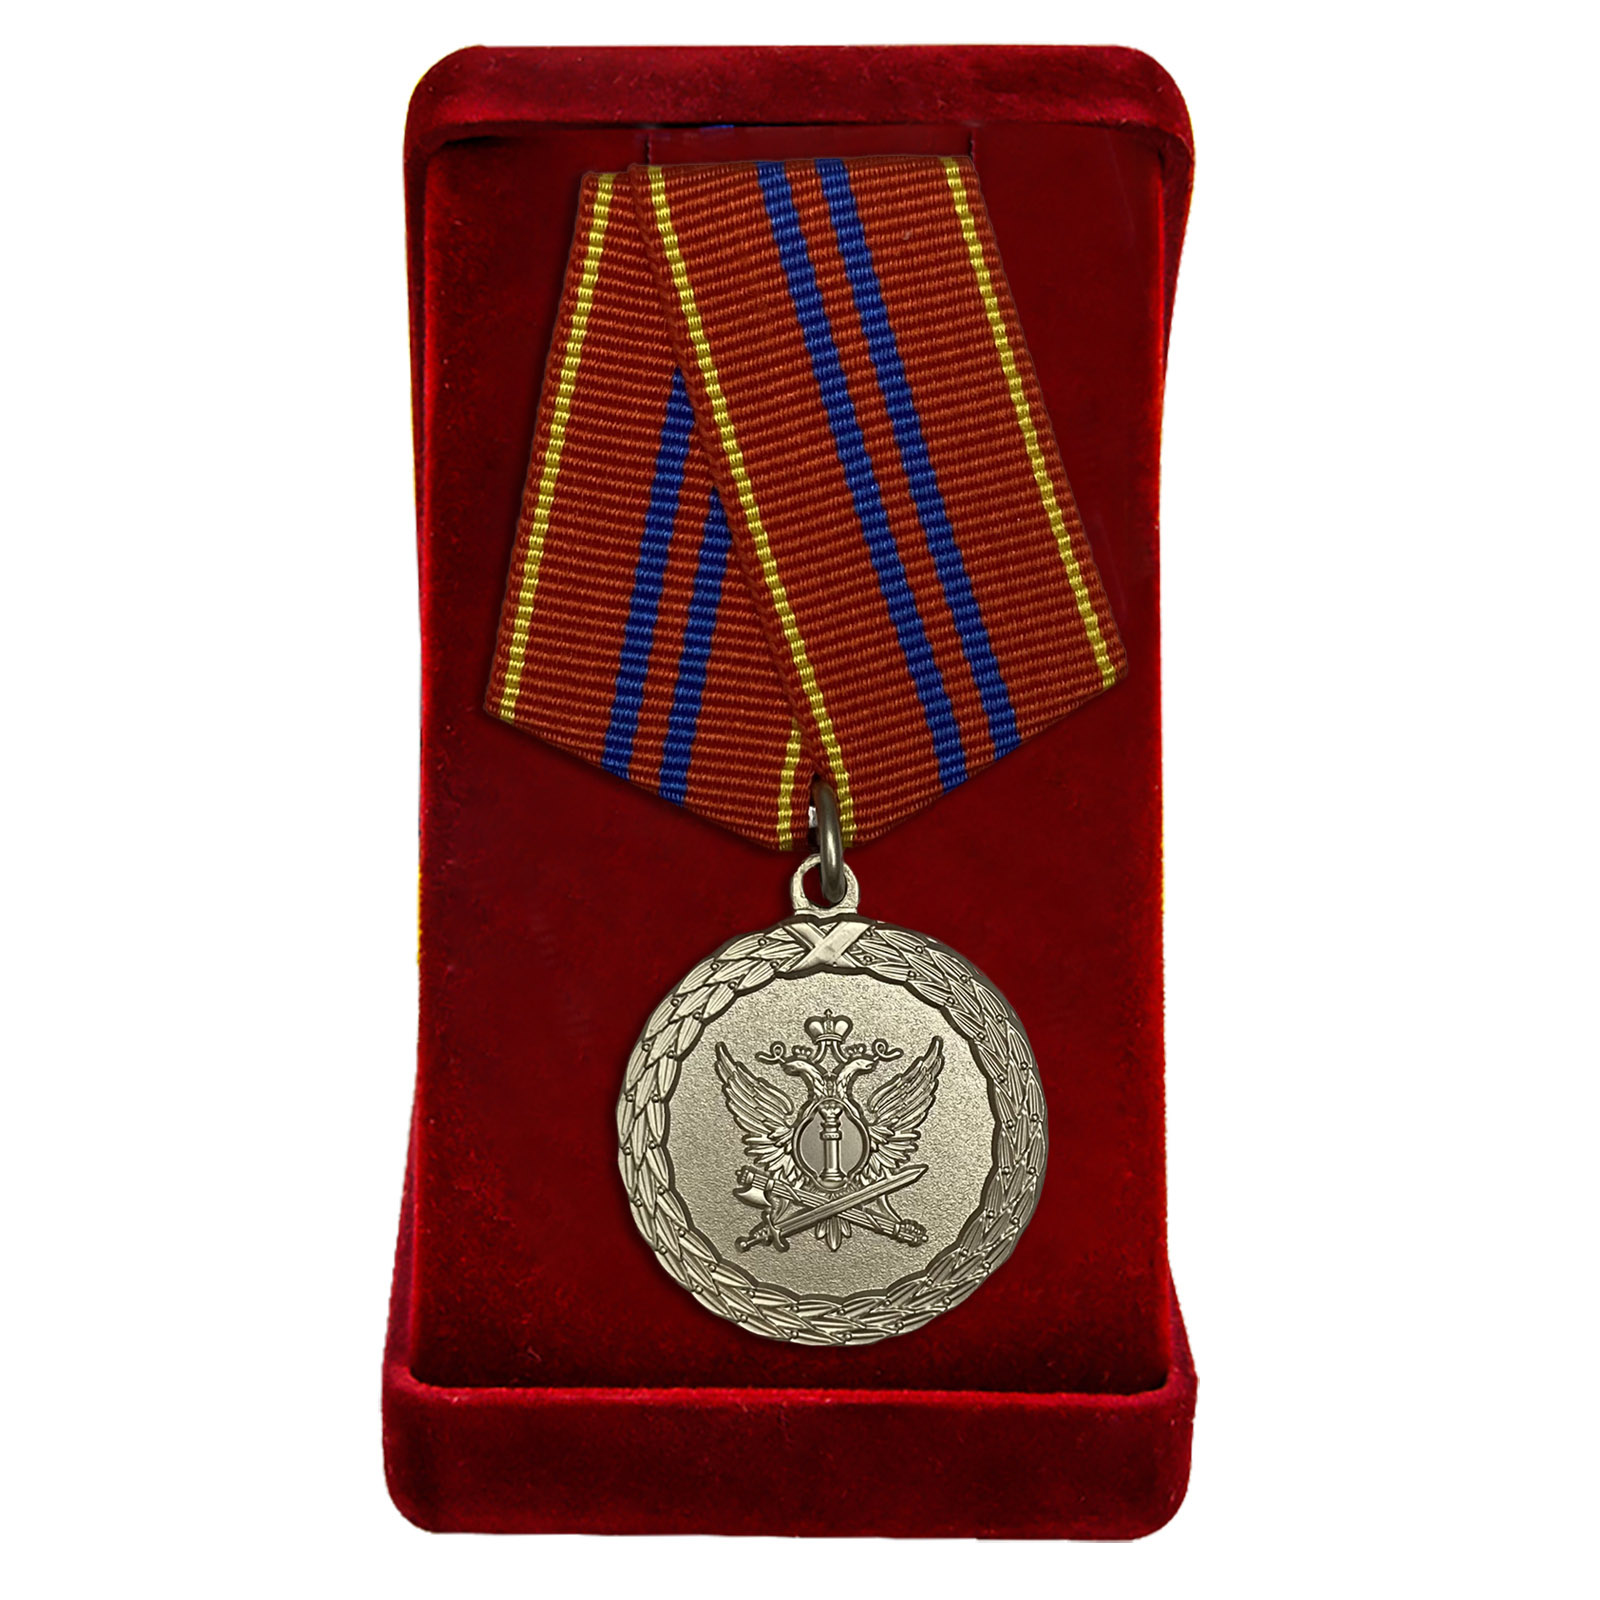 Купить медаль Министерства Юстиции За службу 2 степени онлайн